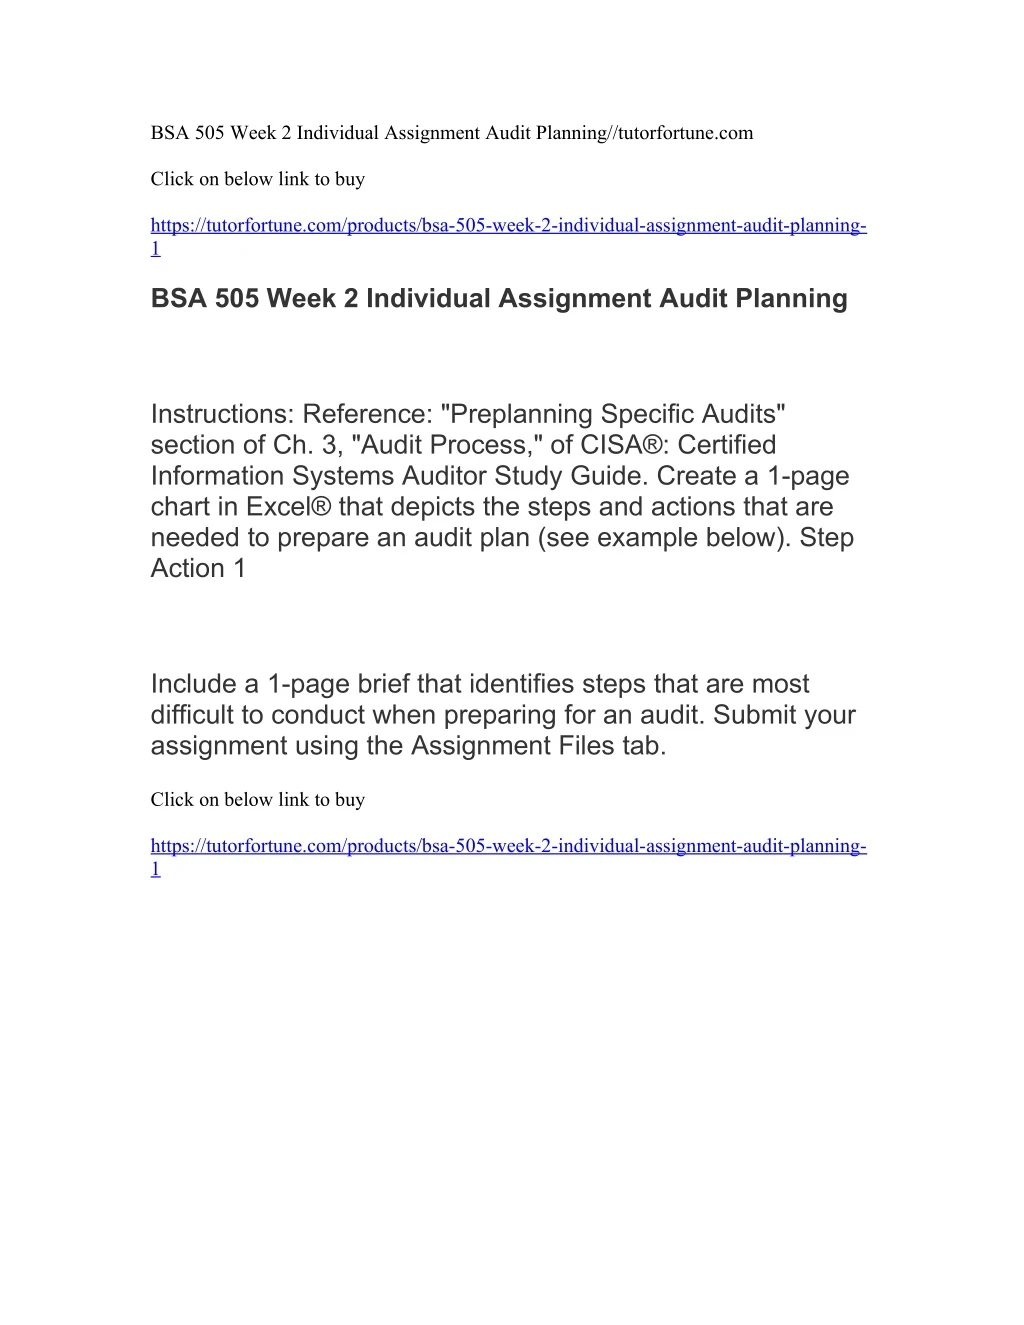 bsa 505 week 2 individual assignment audit